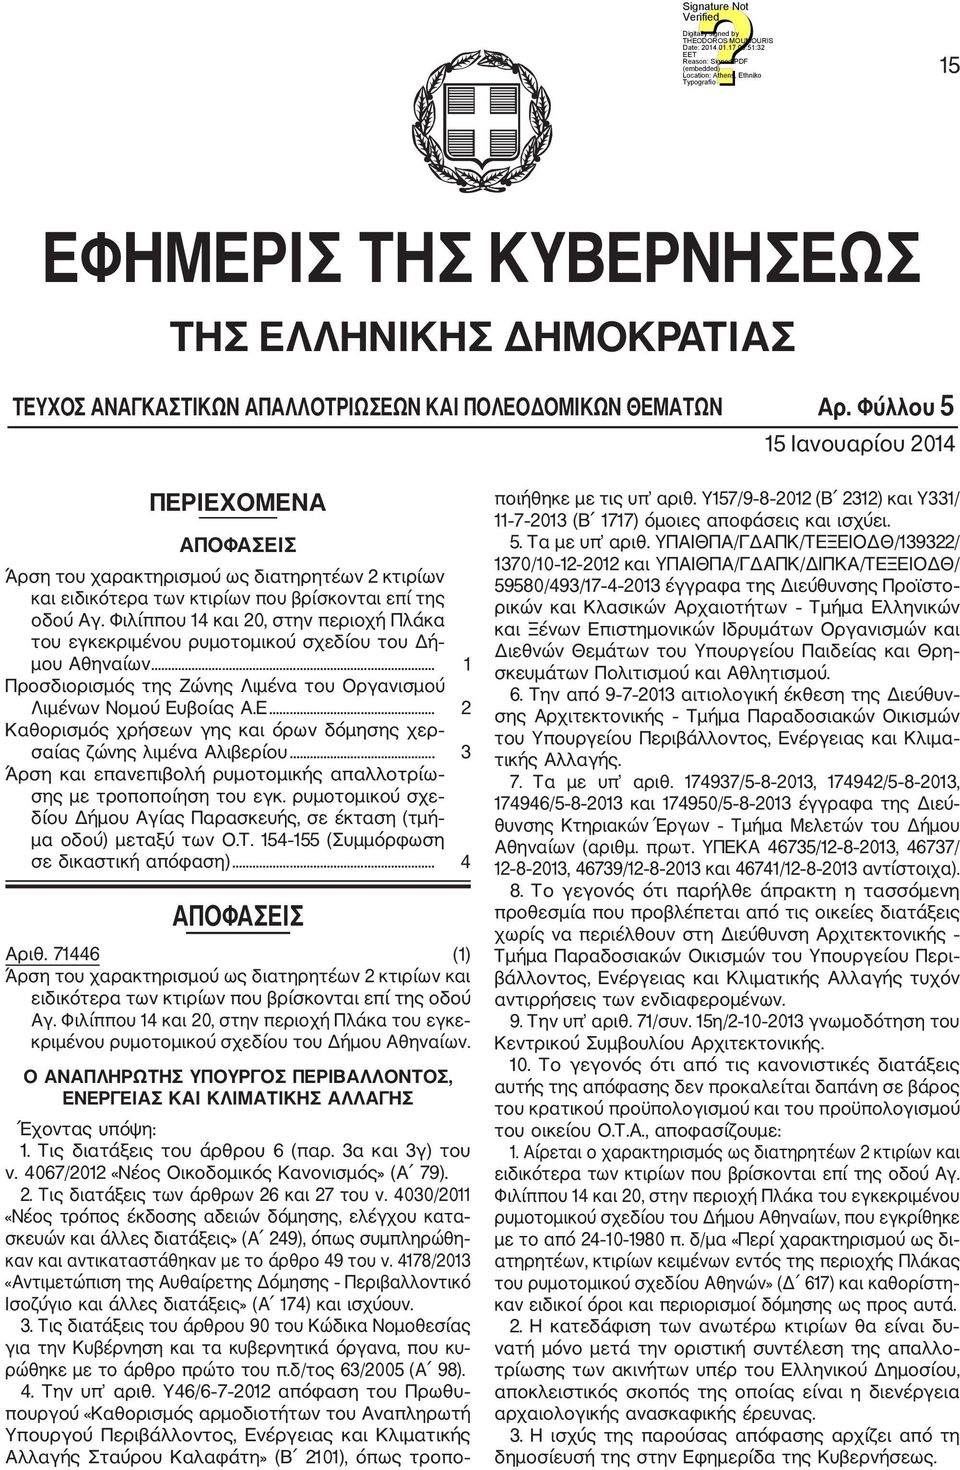 Φιλίππου 14 και 20, στην περιοχή Πλάκα του εγκεκριμένου ρυμοτομικού σχε δίου του Δή μου Αθηναίων... 1 Προσδιορισμός της Ζώνης Λιμένα του Οργανισμού Λιμένων Νομού Ευ